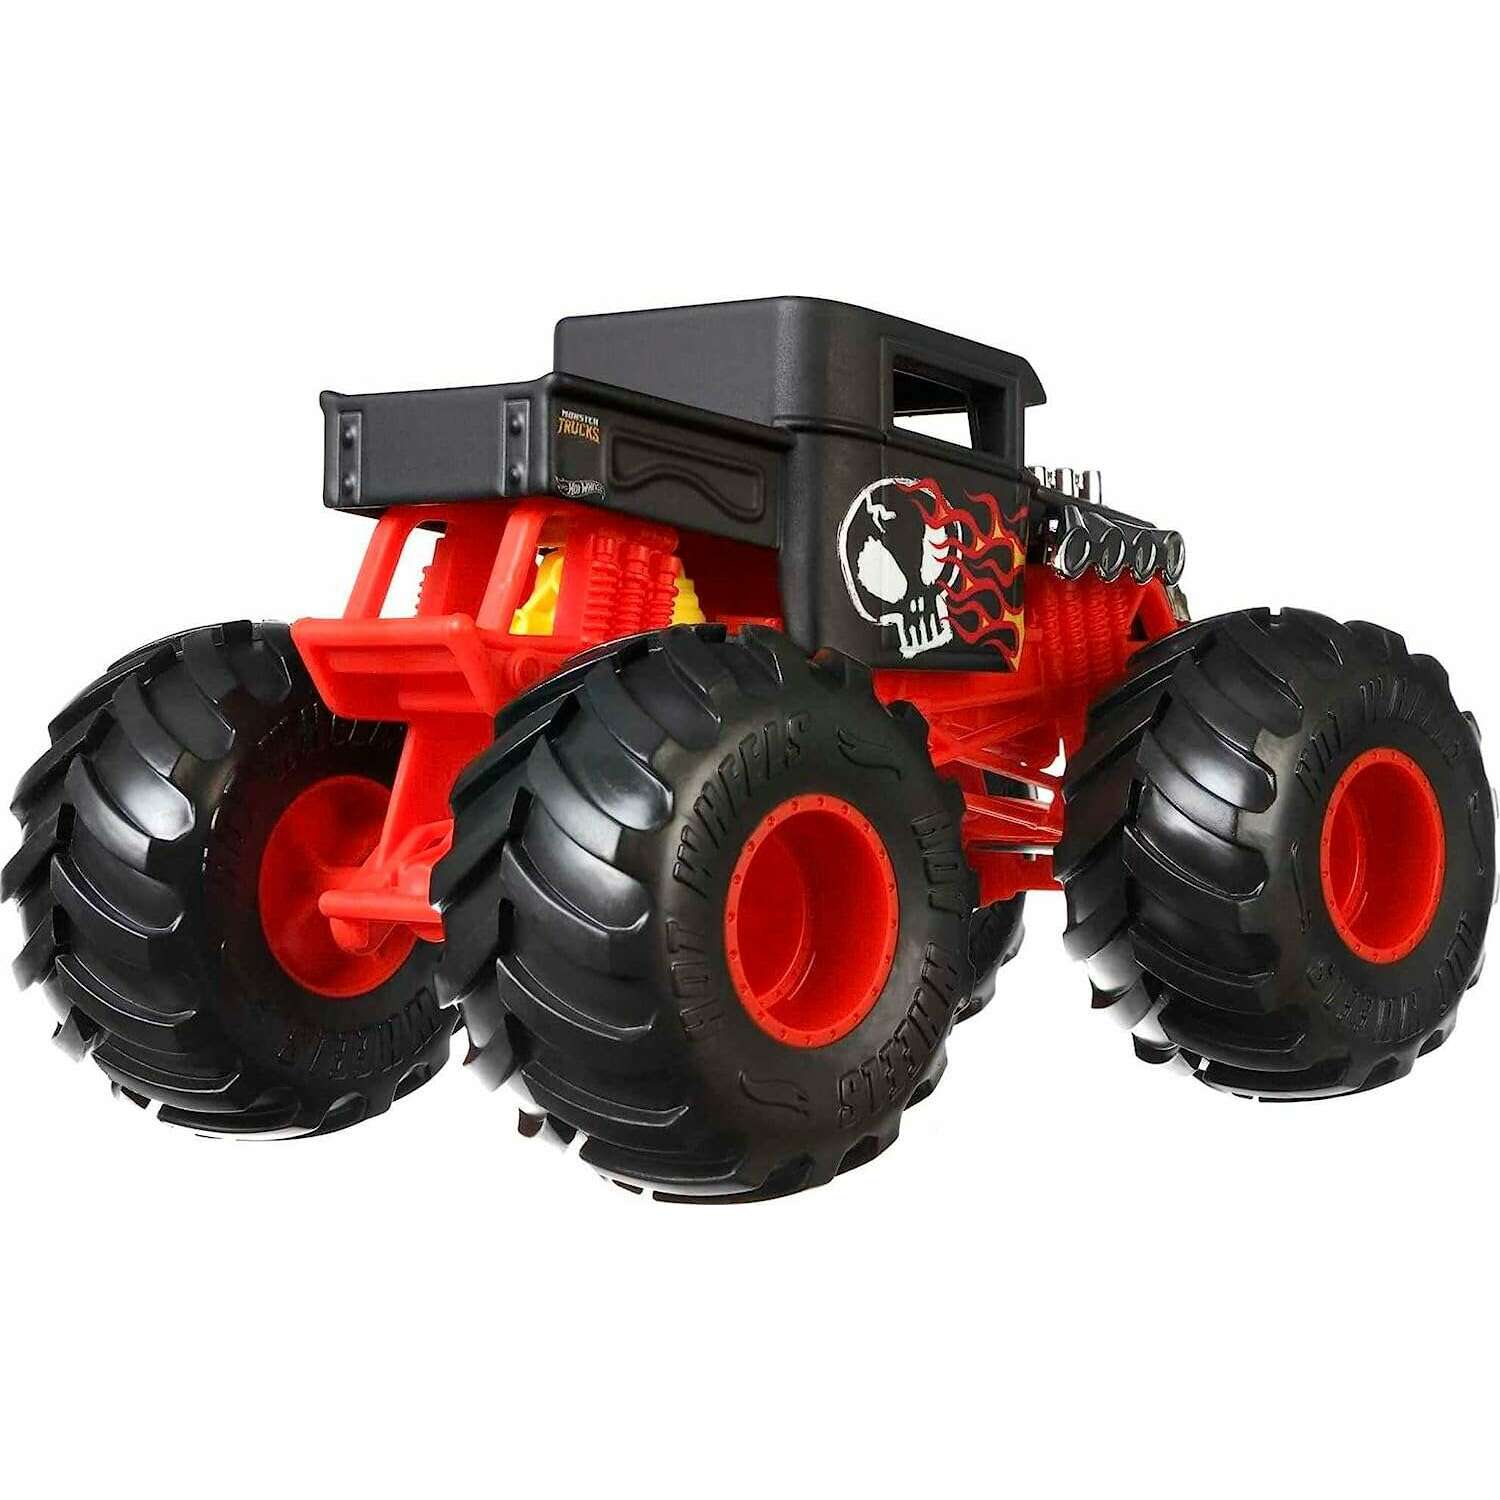 Toys N Tuck:Hot Wheels Monster Trucks Oversized - Bone Shaker,Hot Wheels